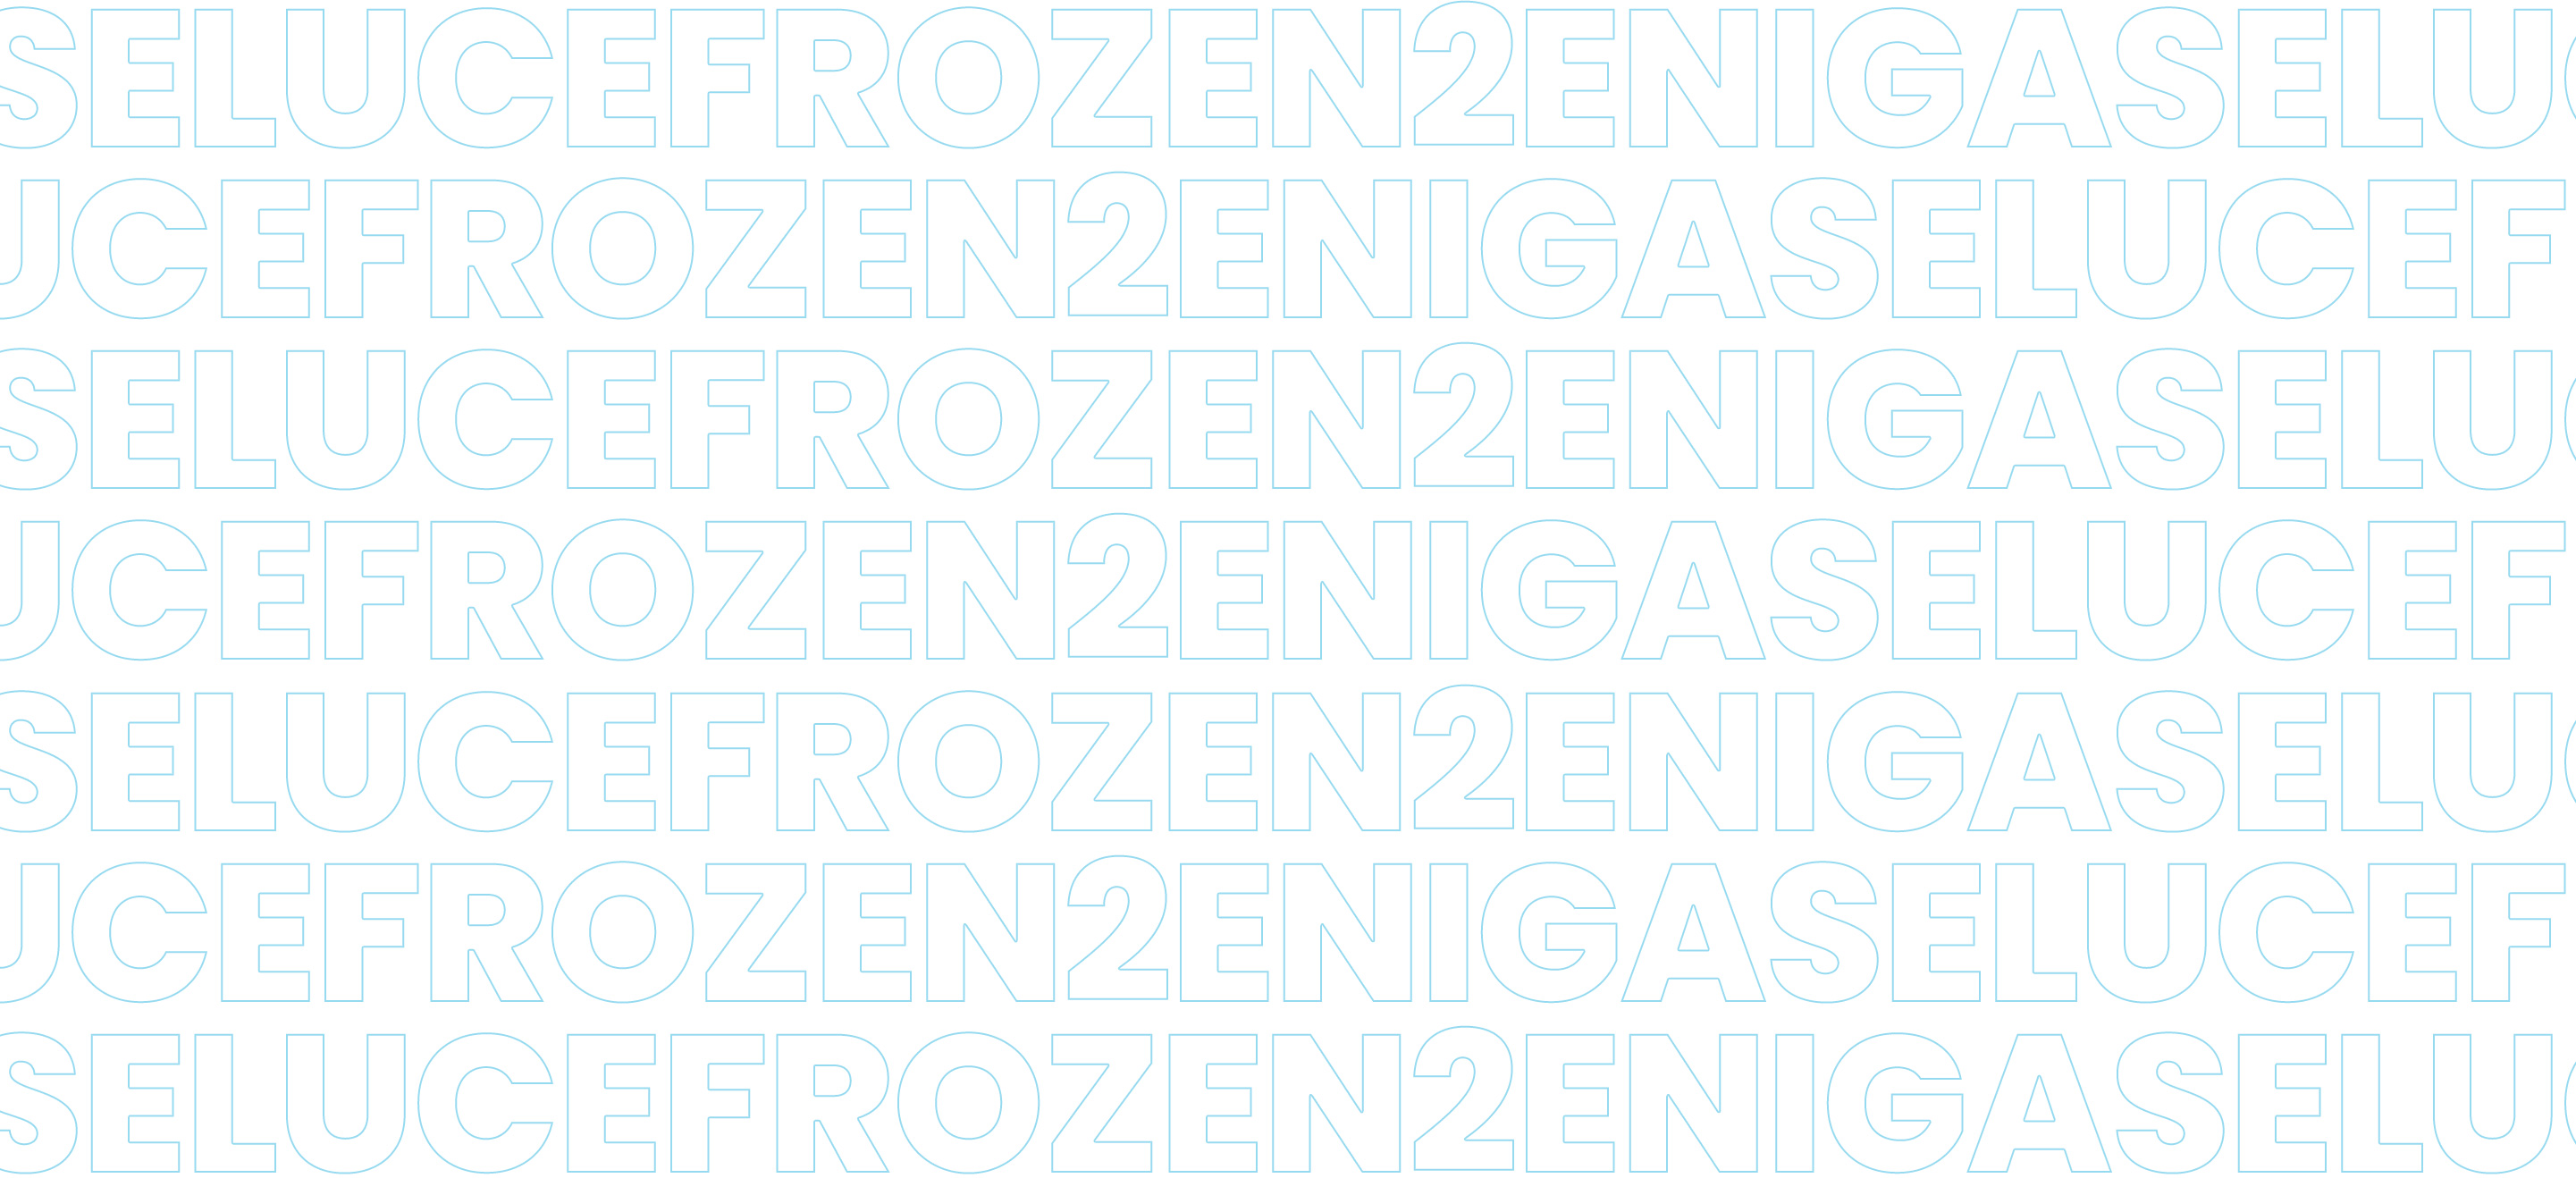 Sfondo-Gallery_EniGasLuce-Frozen2: questa immagine non ha ancora un testo alternativo.